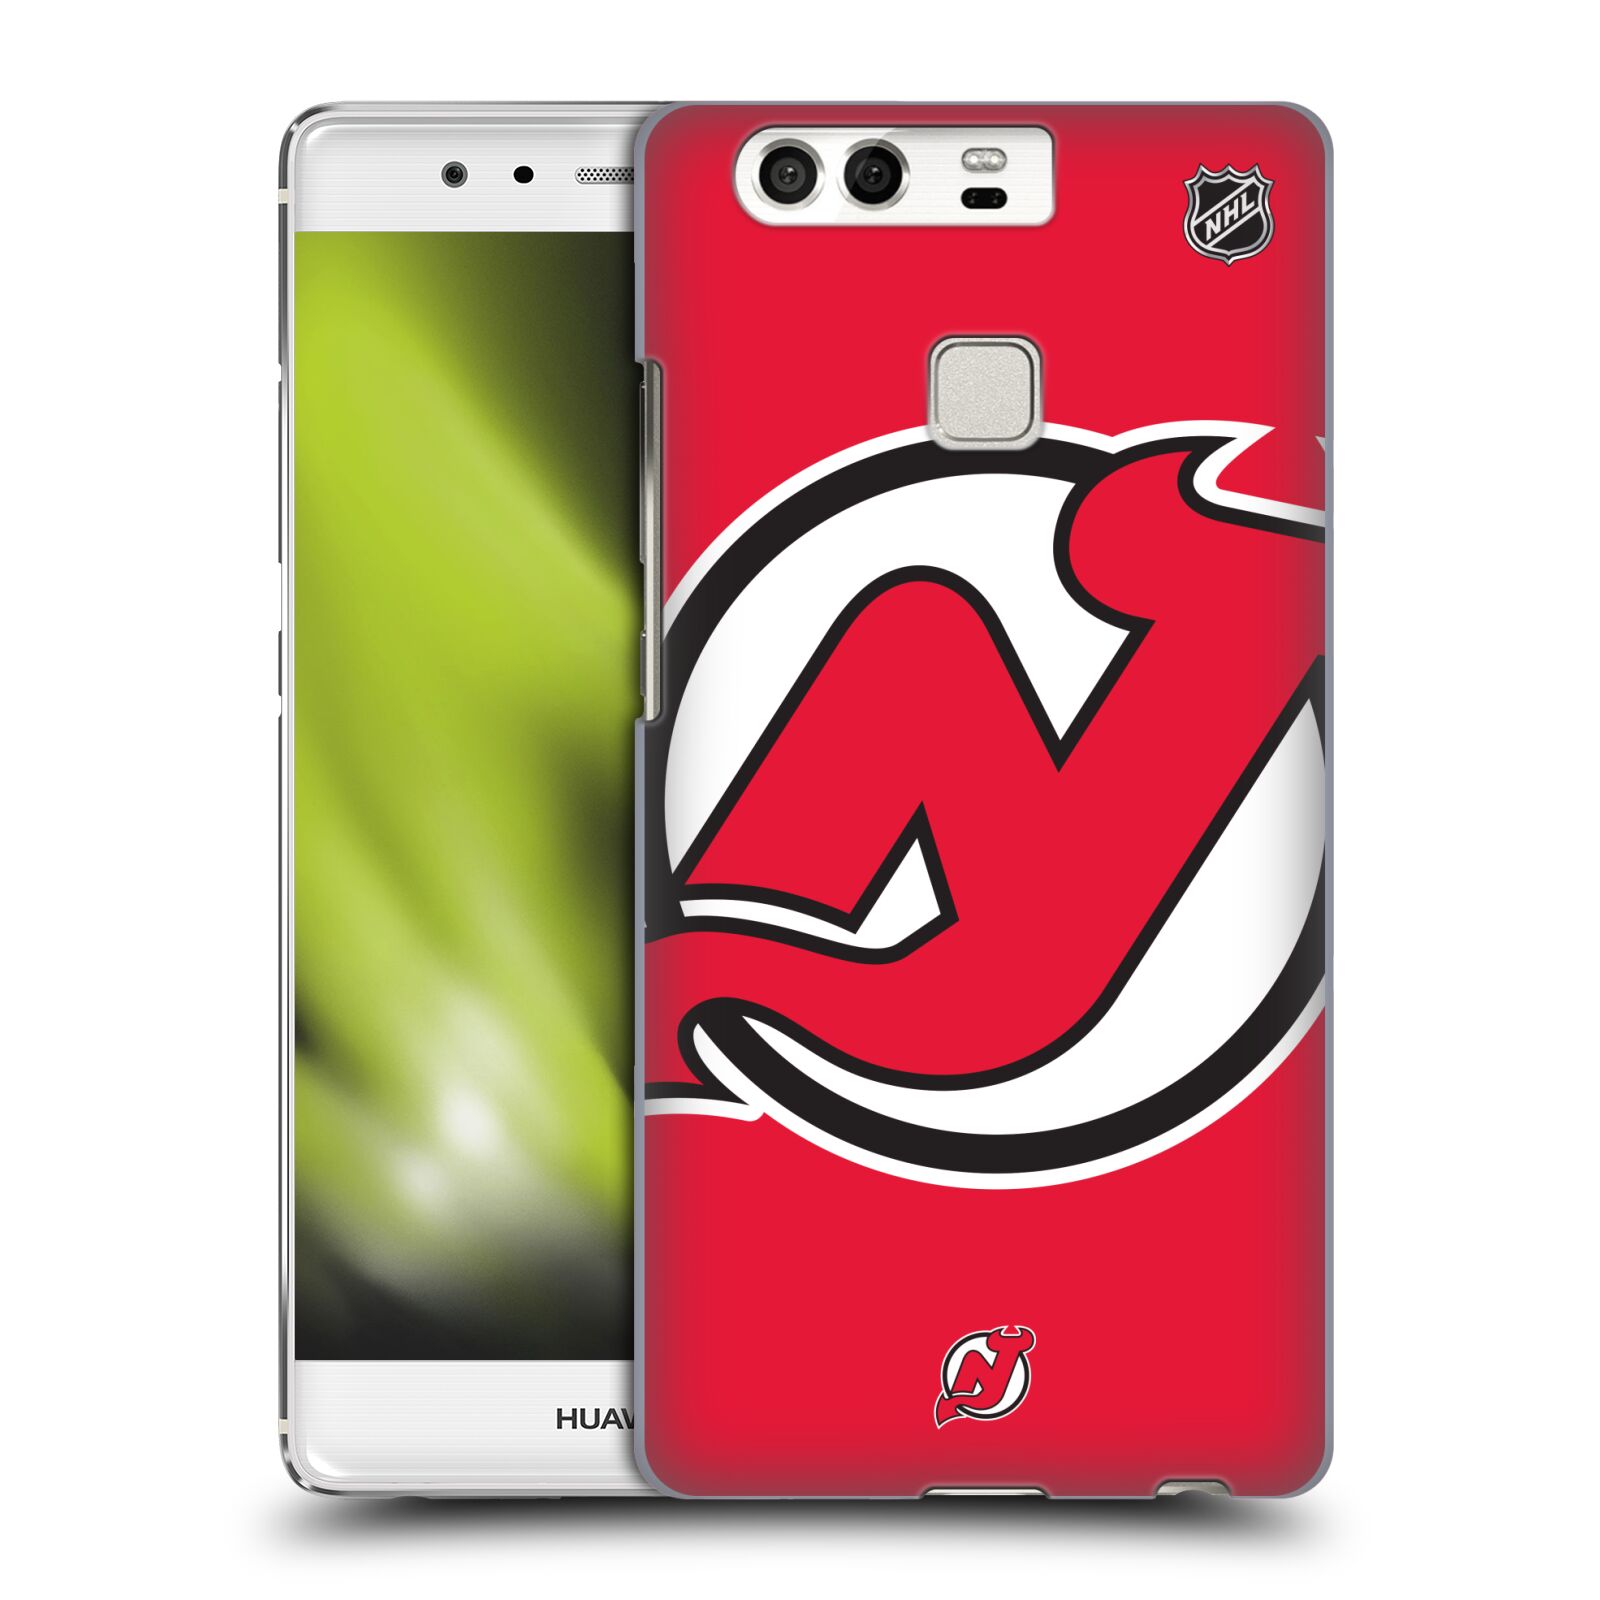 Pouzdro na mobil Huawei P9 / P9 DUAL SIM - HEAD CASE - Hokej NHL - New Jersey Devils - Velký znak